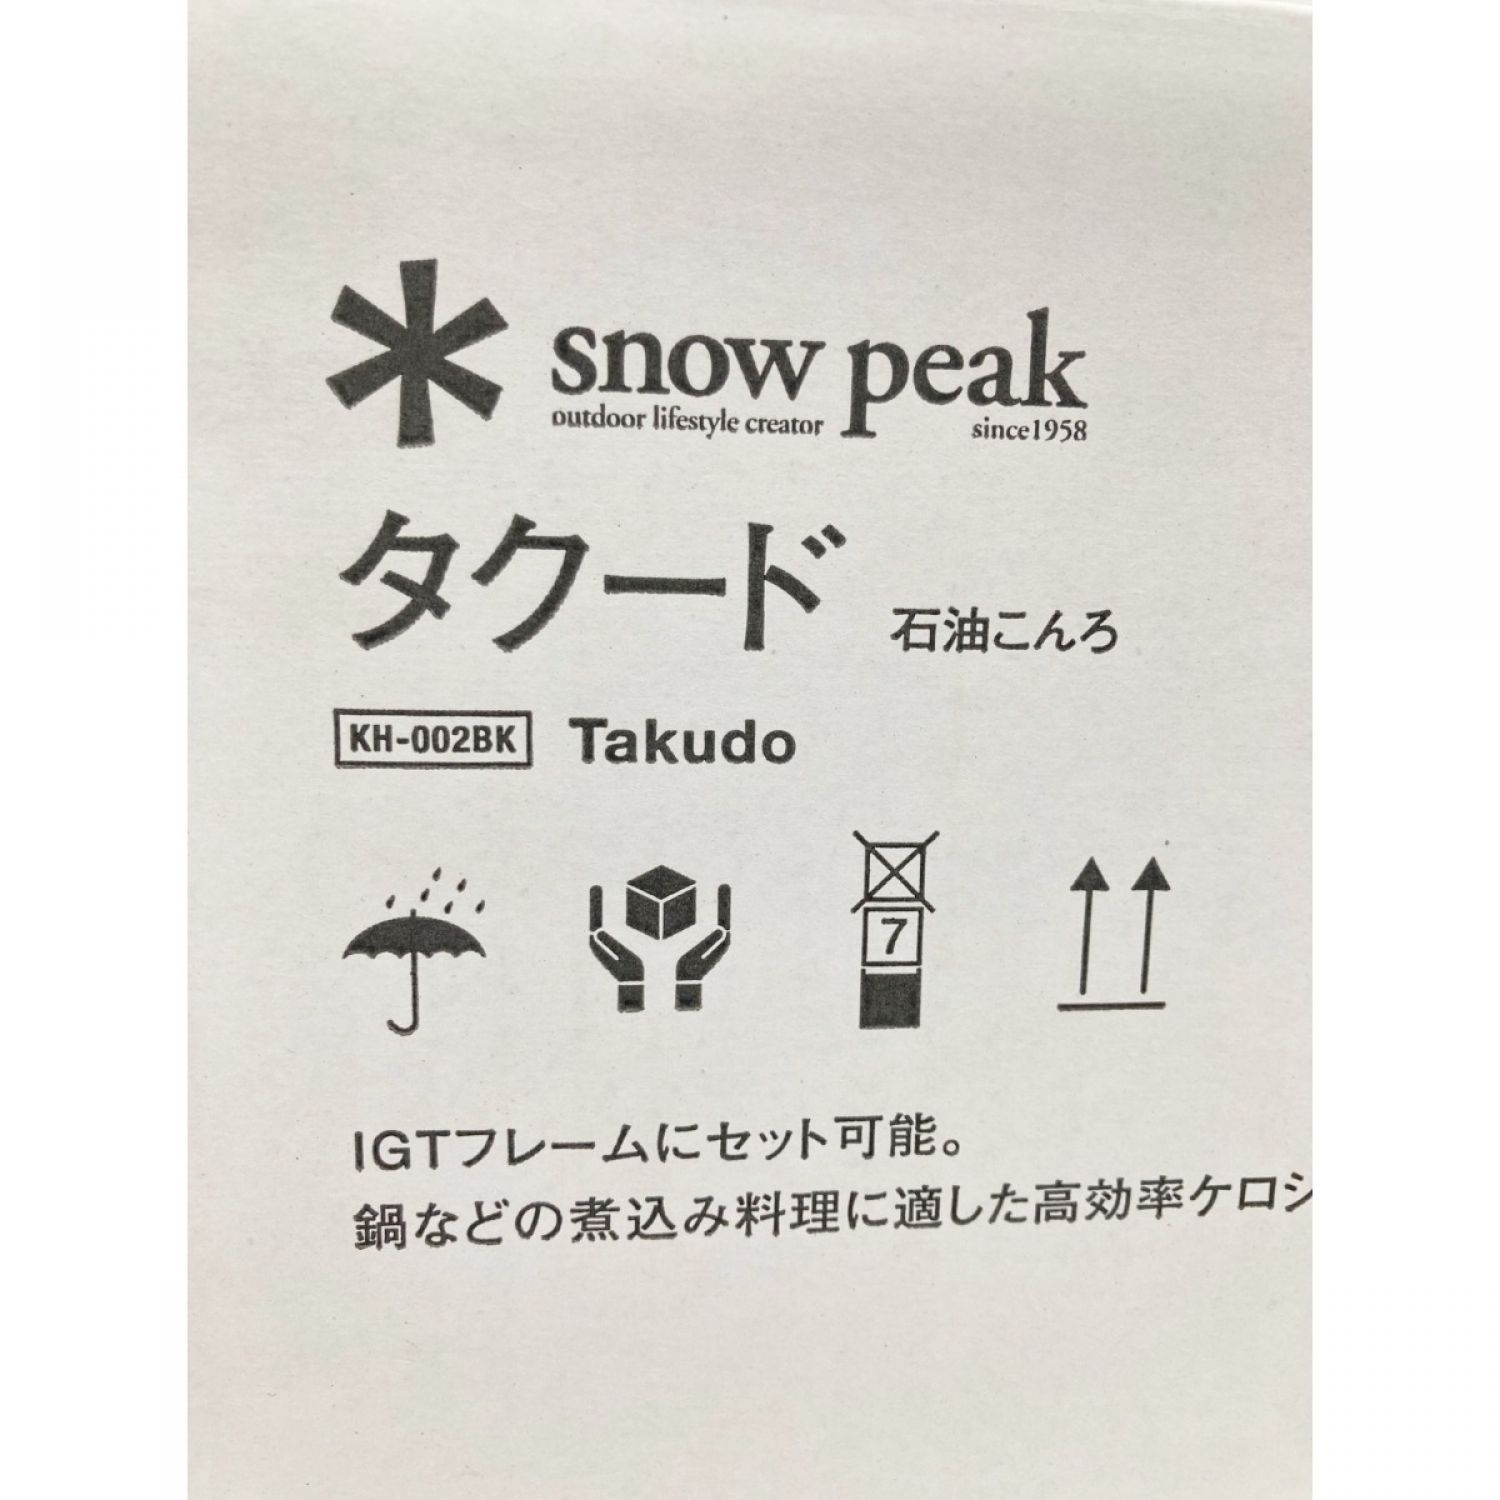 中古】 snowpeak スノーピーク タクード ストーブ KH-002BK 未開封品 S